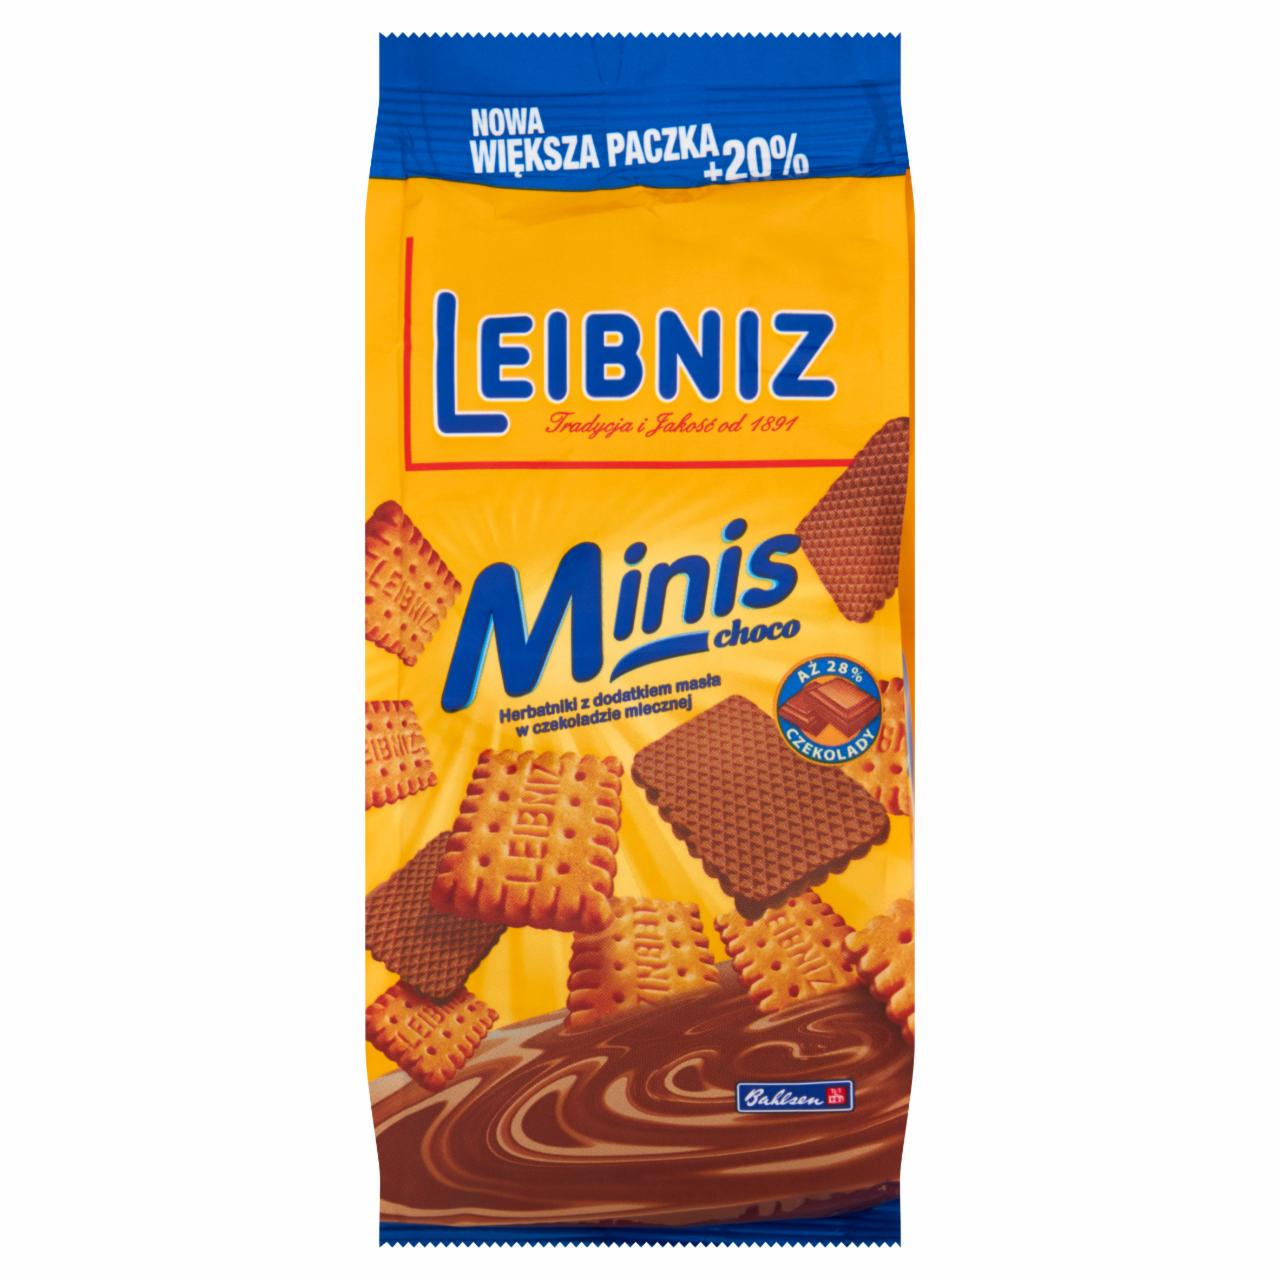 Zdjęcia - Leibniz Minis Choco Herbatniki z dodatkiem masła w czekoladzie mlecznej 120 g